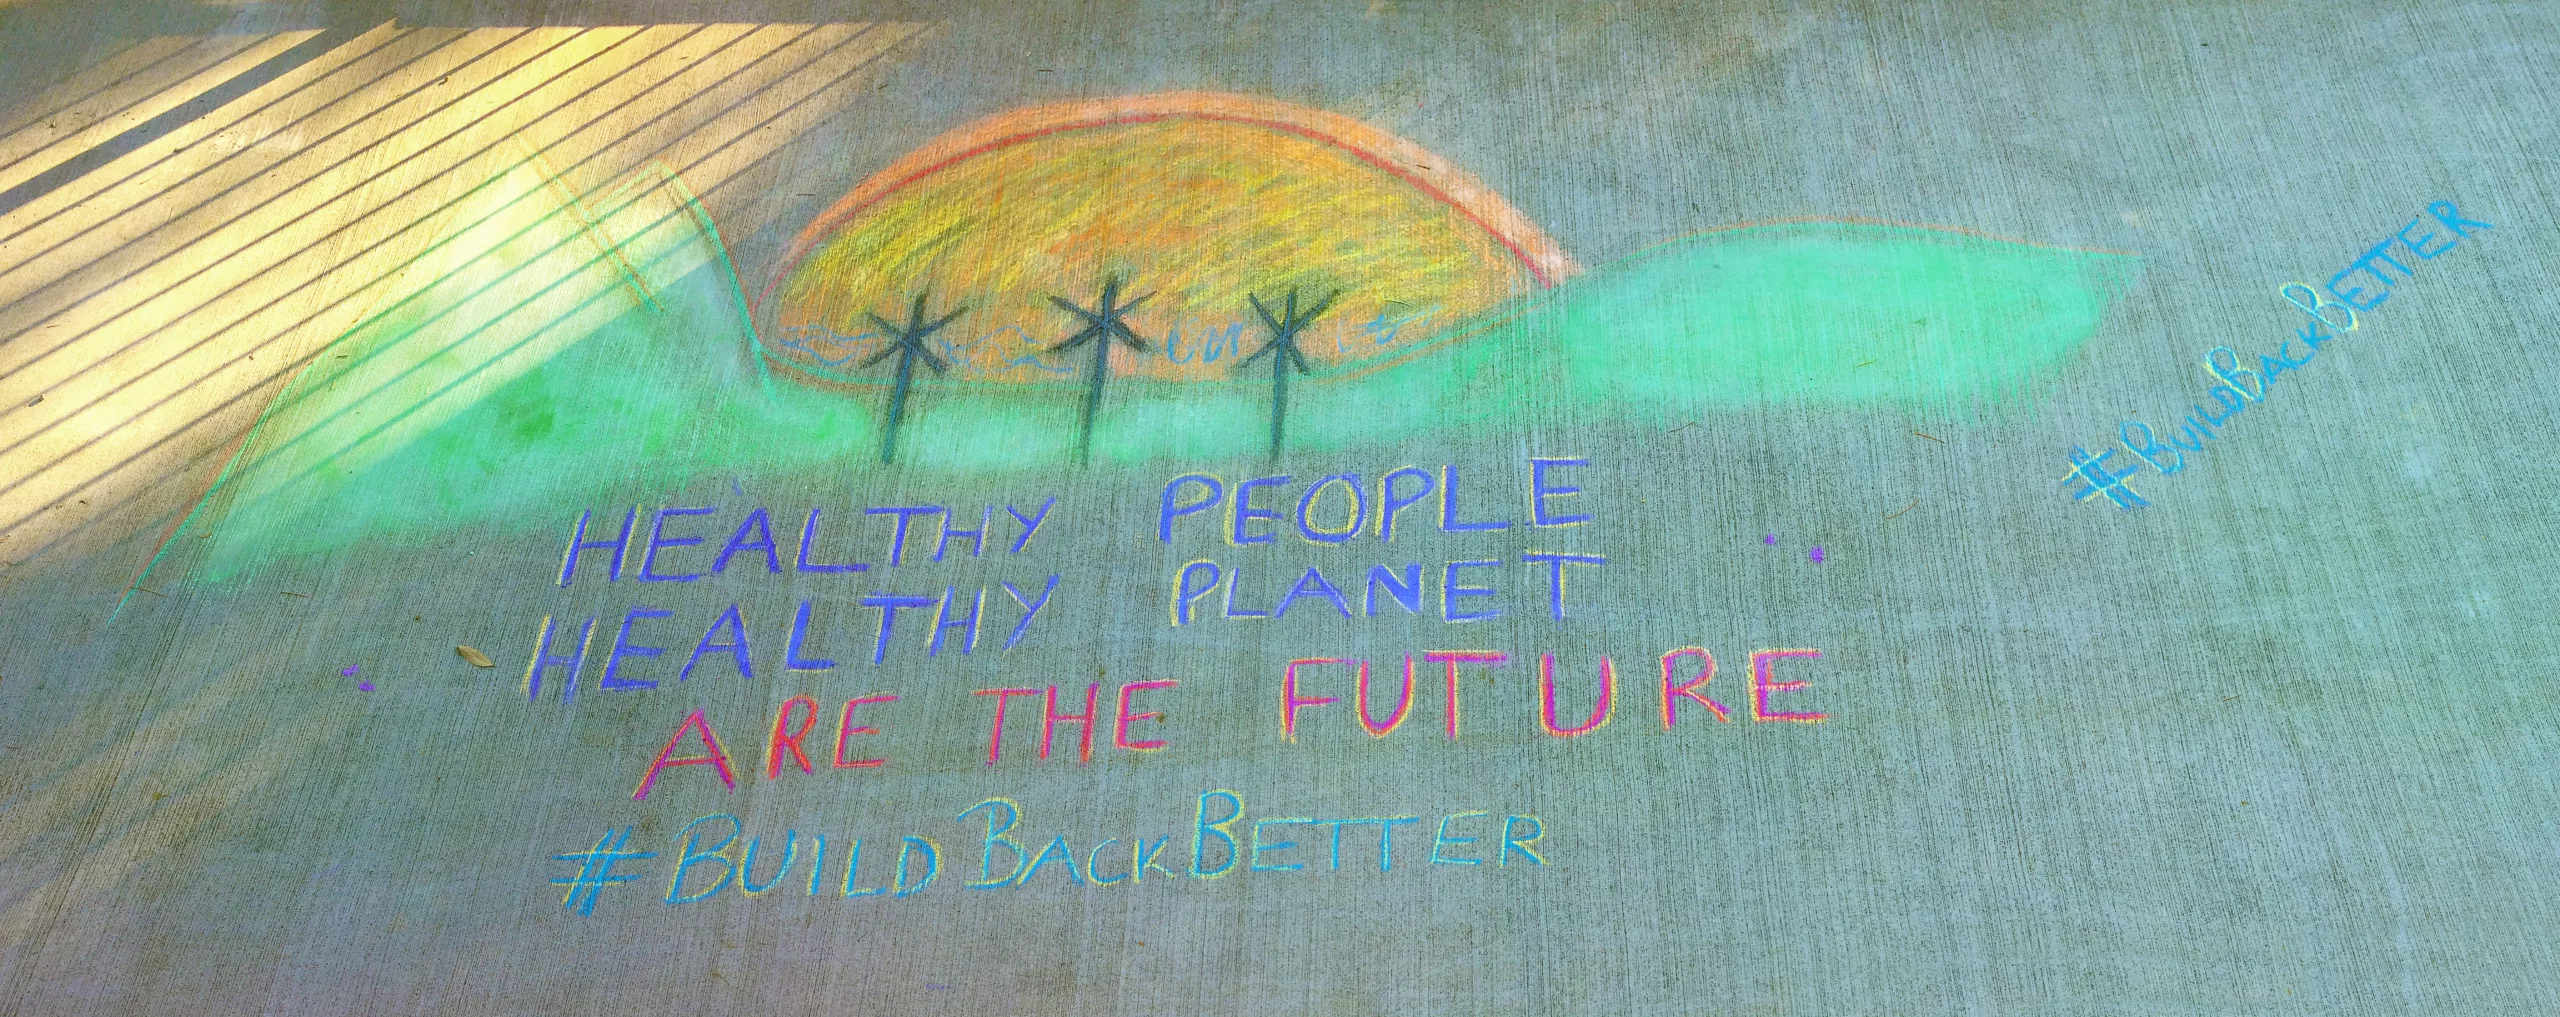 frases sobre o impacto social: pessoas saudáveis, planeta saudável, somos o futuro,